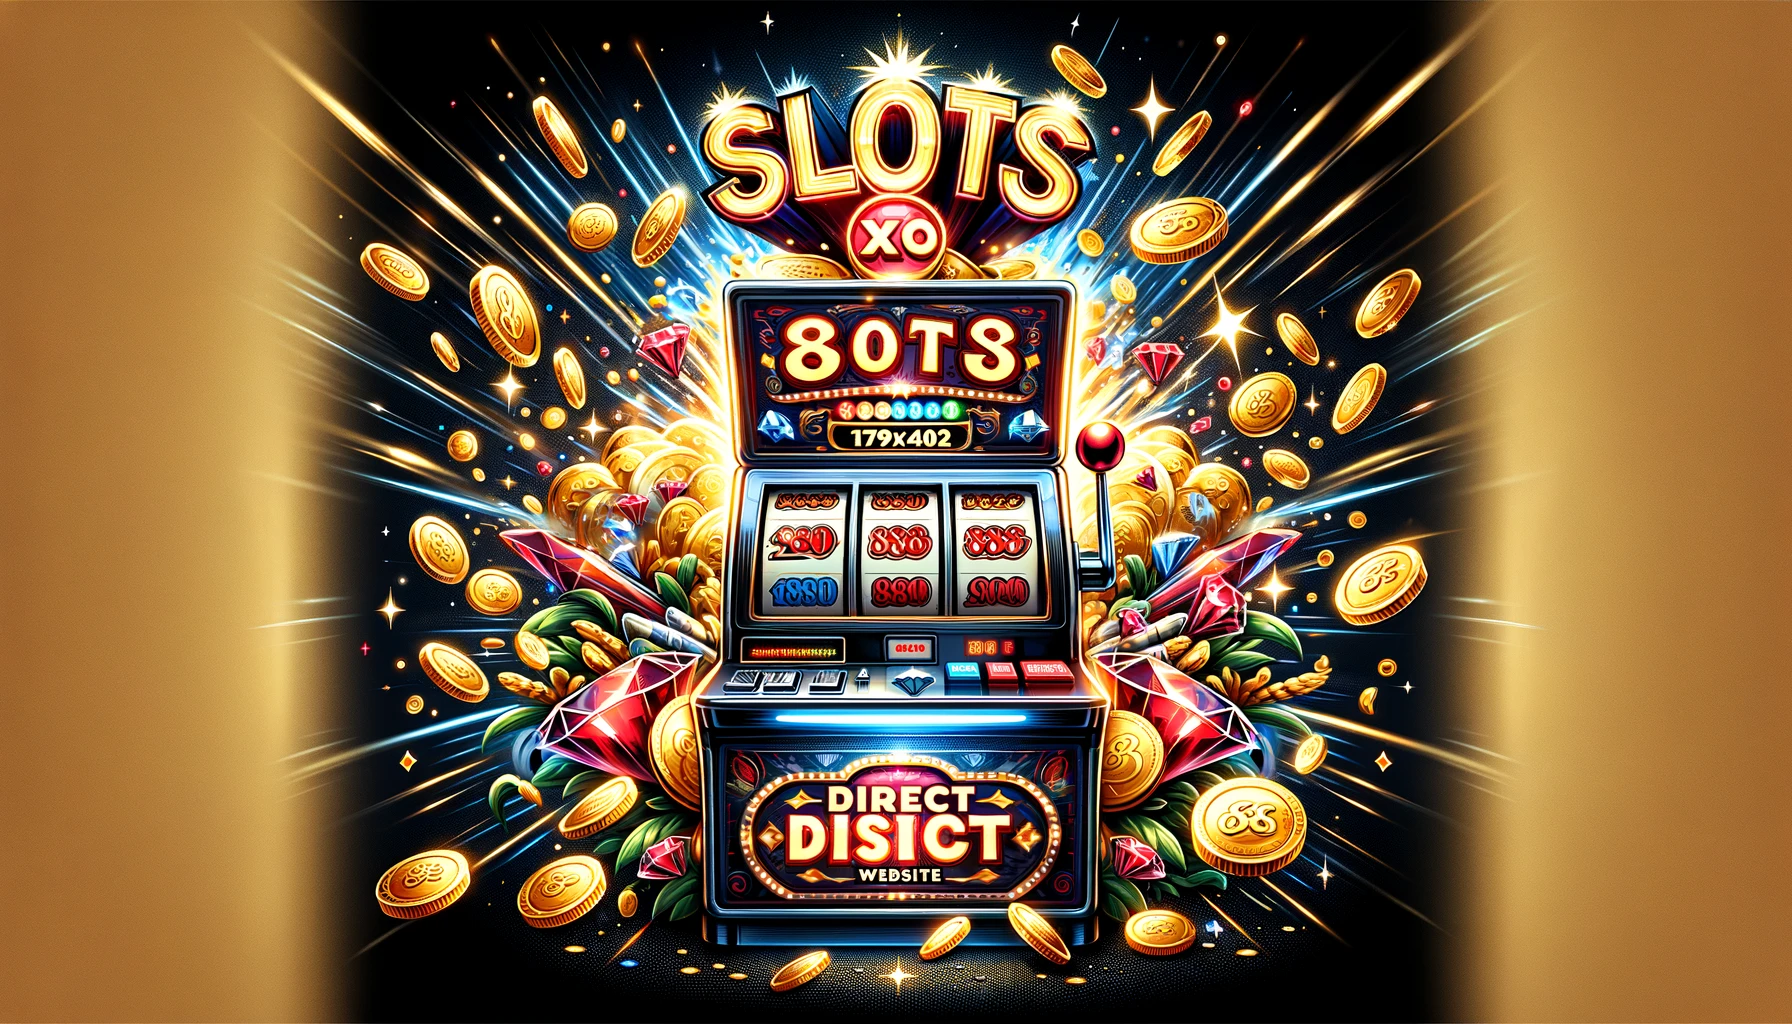 Slots xo 888 direct website